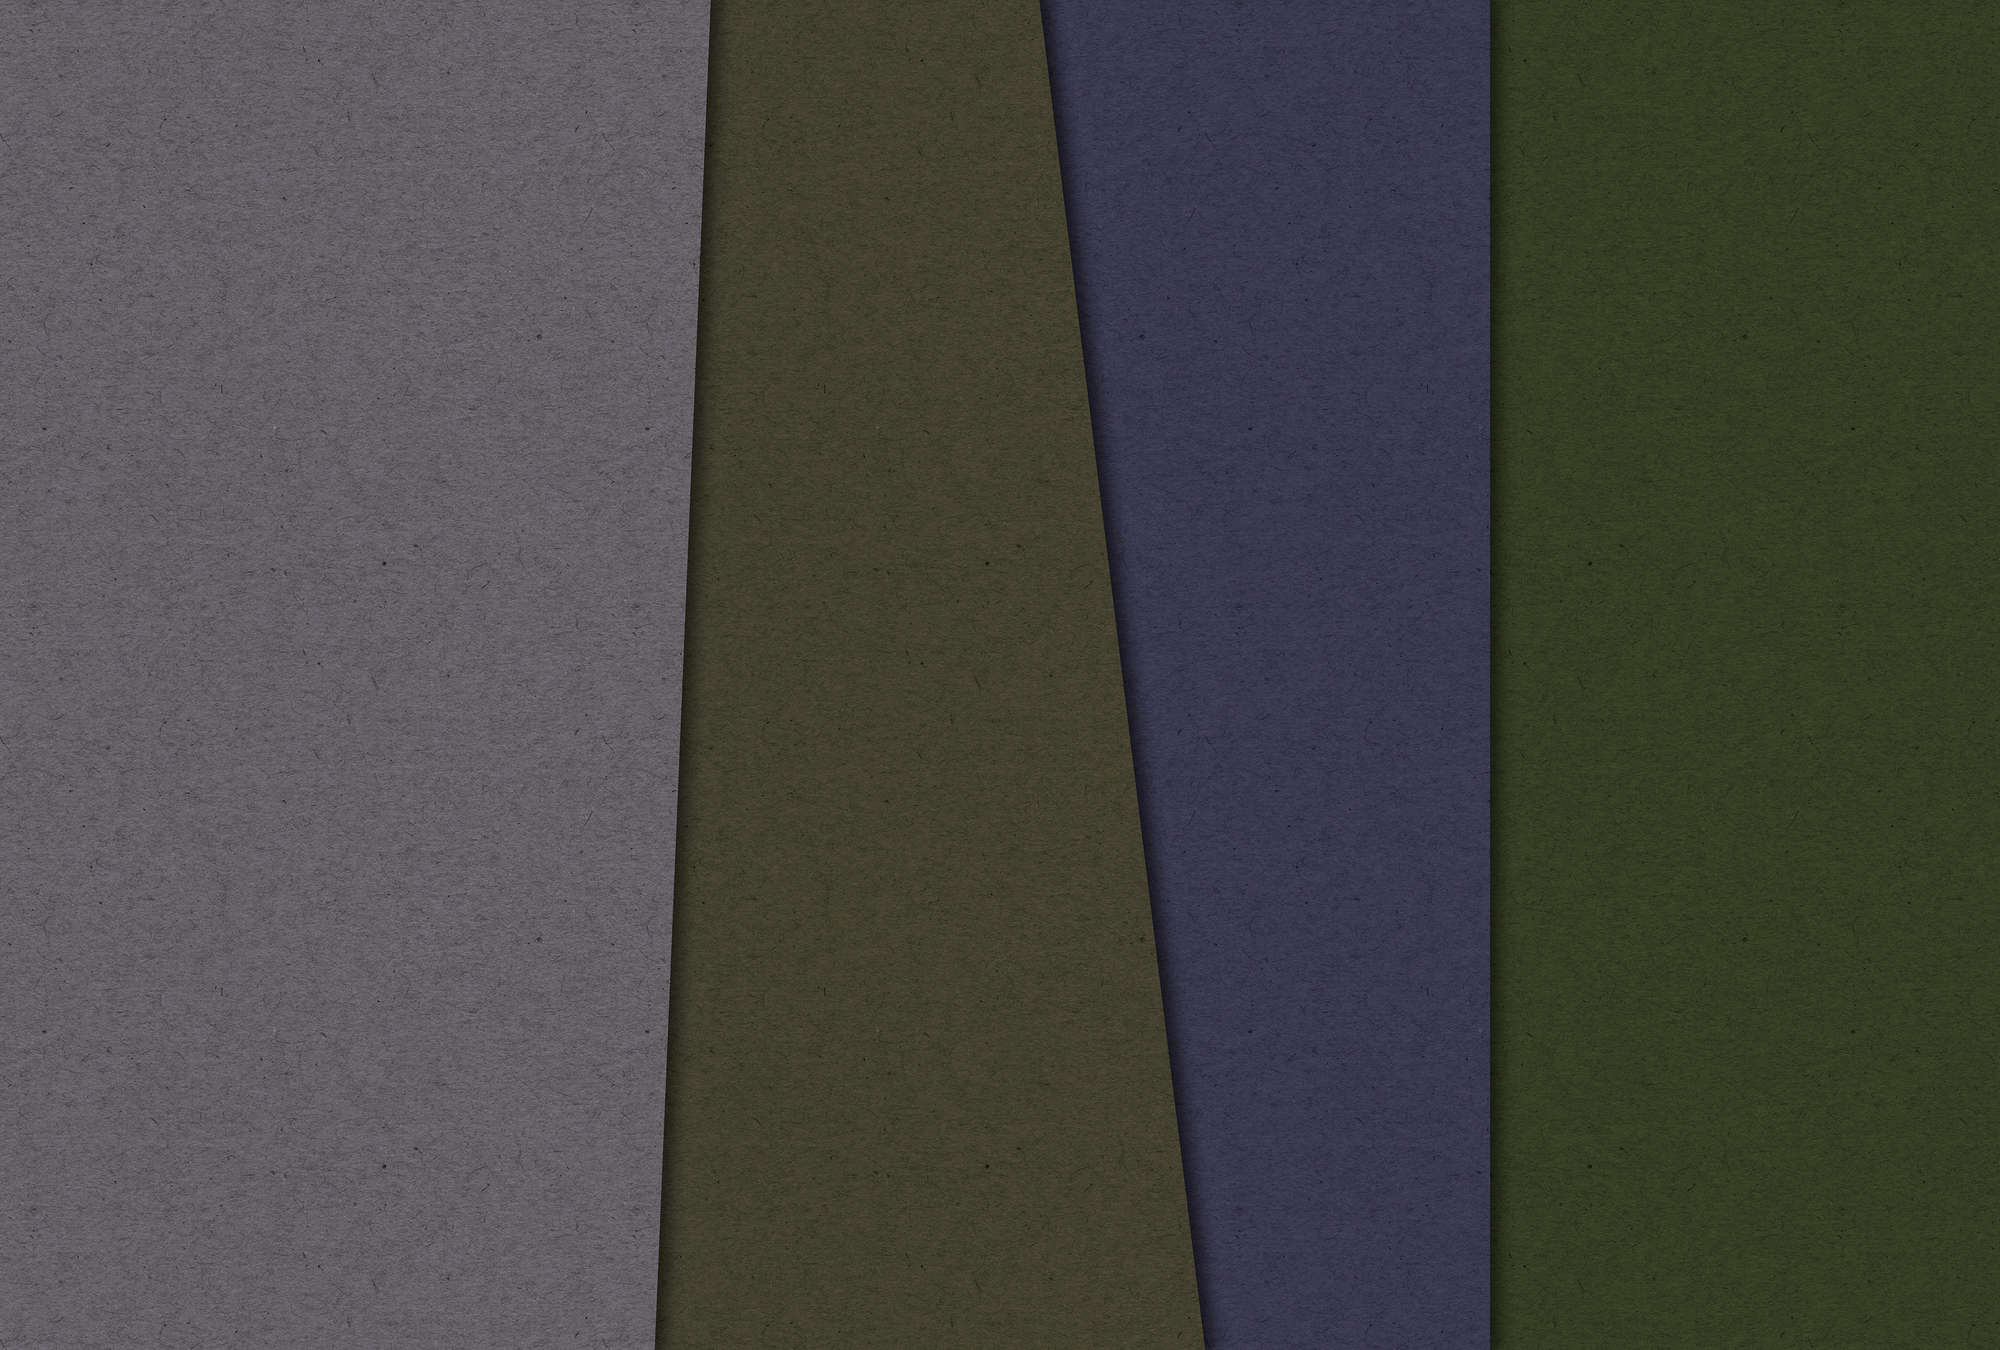             Layered Cardboard 3 - Fotomurali minimalista e astratto - Natura qualita consistenza in cartone - Verde, Viola | Pile liscio perlato
        